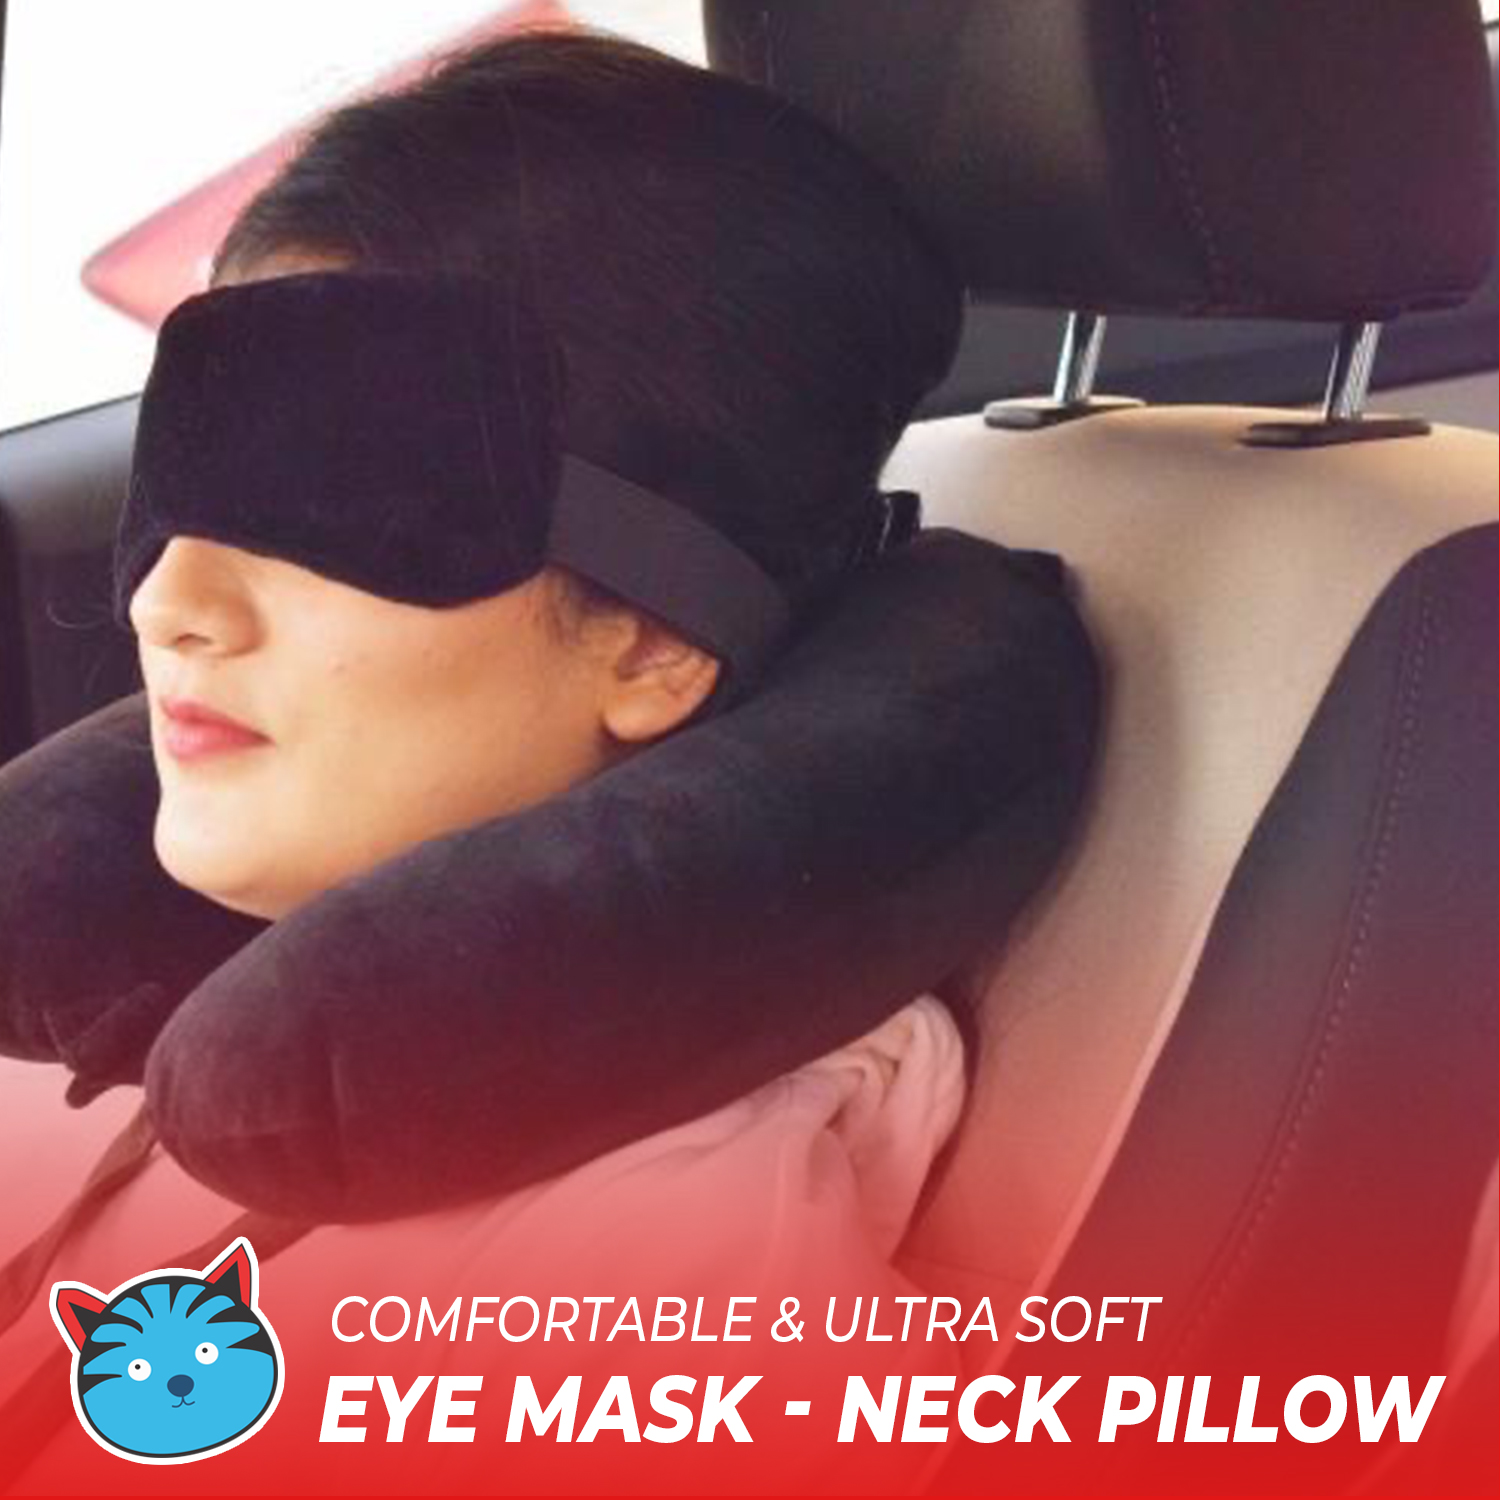 Buy Billebon Neck Pillow Eye Mask - Combo Airline Travel Neck Pillow ...